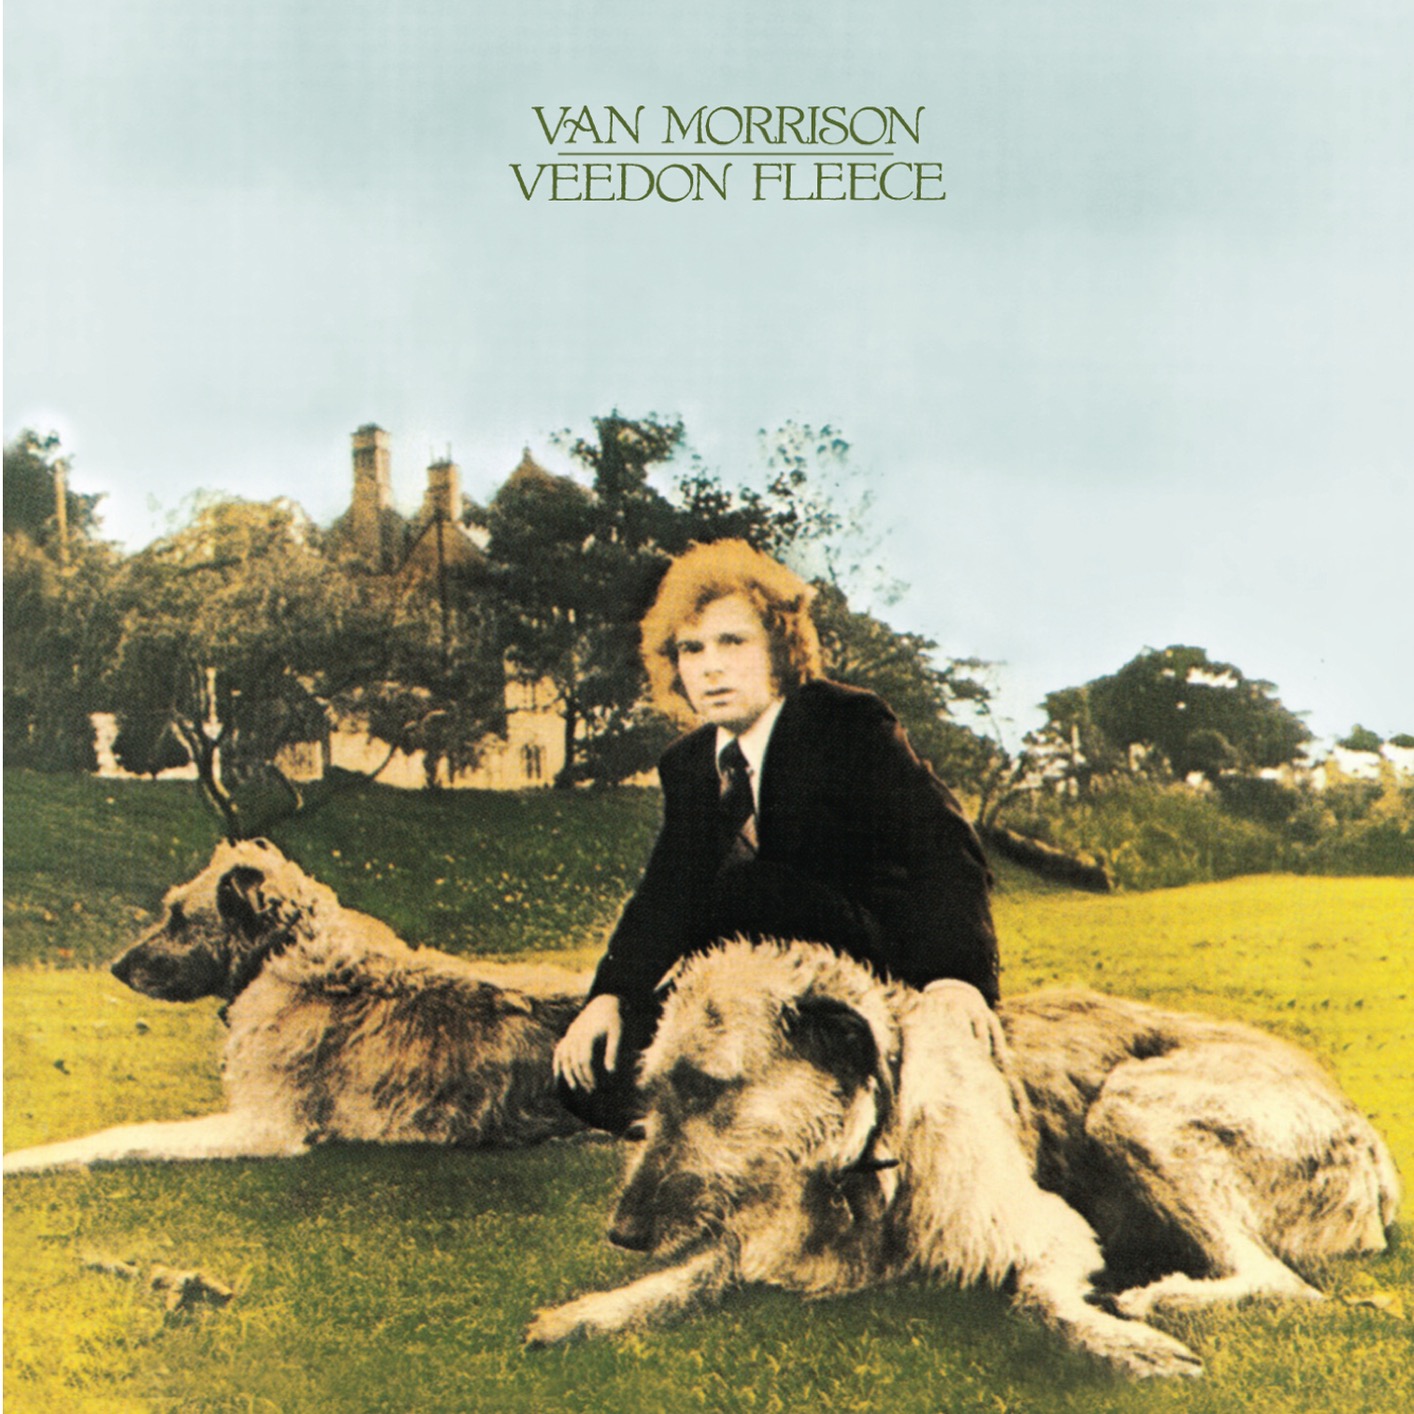 Van Morrison - Veedon Fleece (Remastered) (1974/2020) [FLAC 24bit/96kHz]